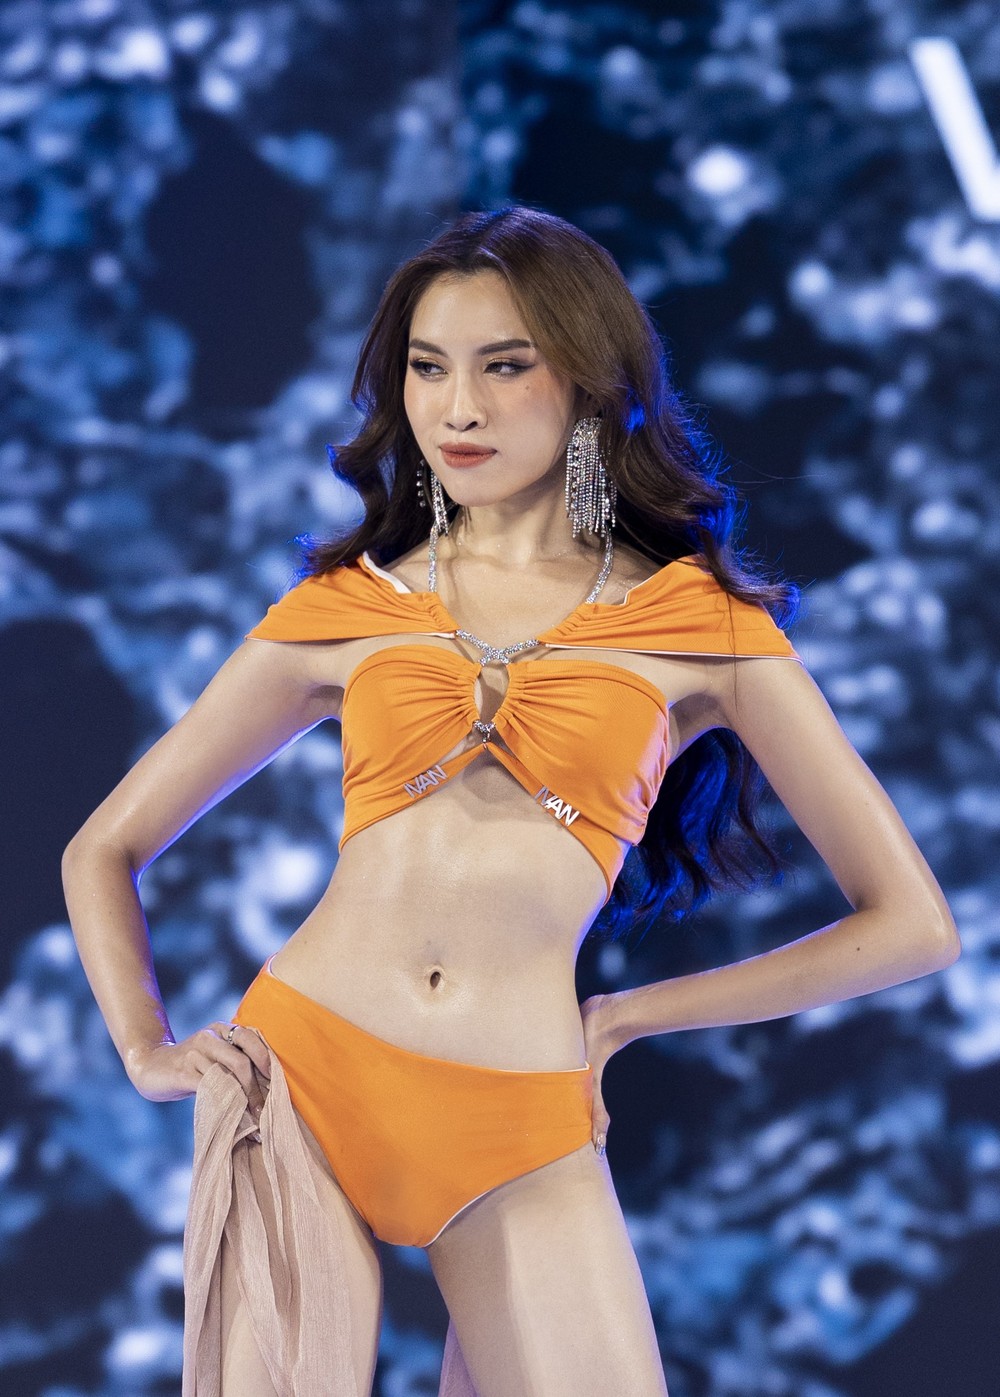 Tranh cãi khi người đẹp Thanh Thanh Huyền được gọi là hoa hậu - Ảnh 2.